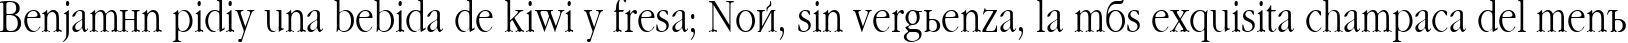 Пример написания шрифтом Classic текста на испанском